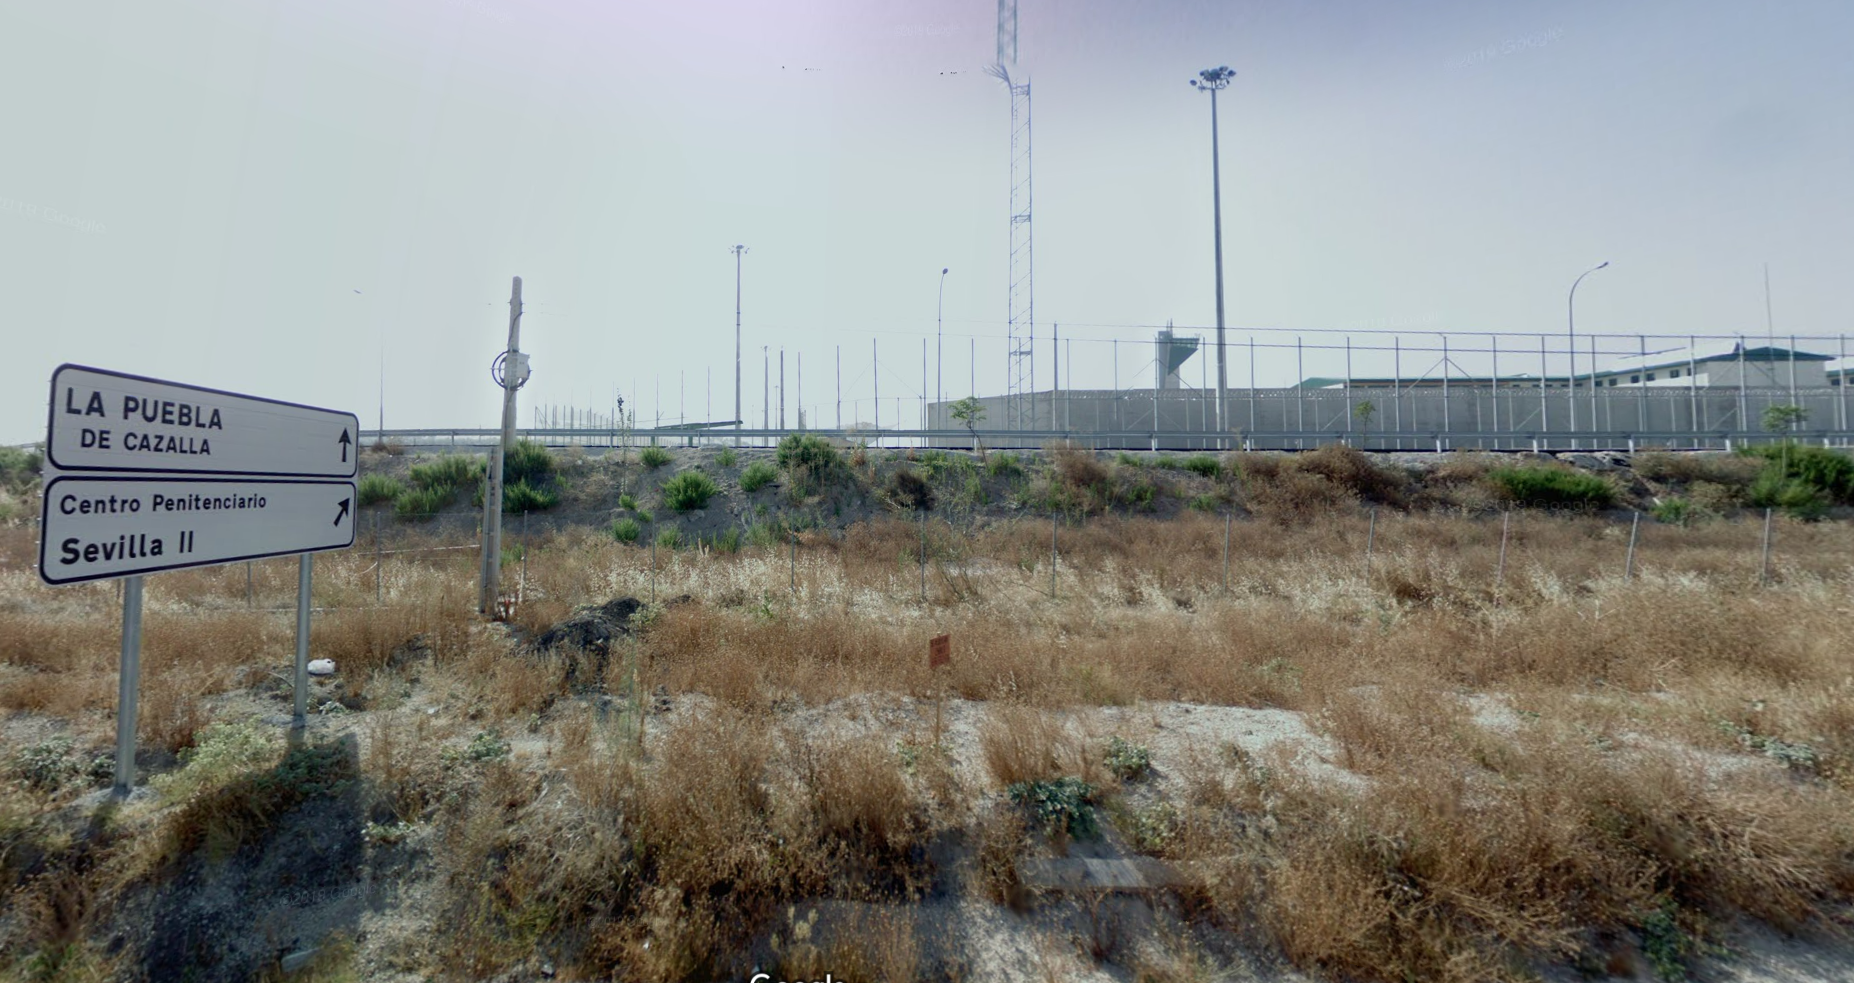 La prisión de Sevilla II, en una imagen de Google Maps.